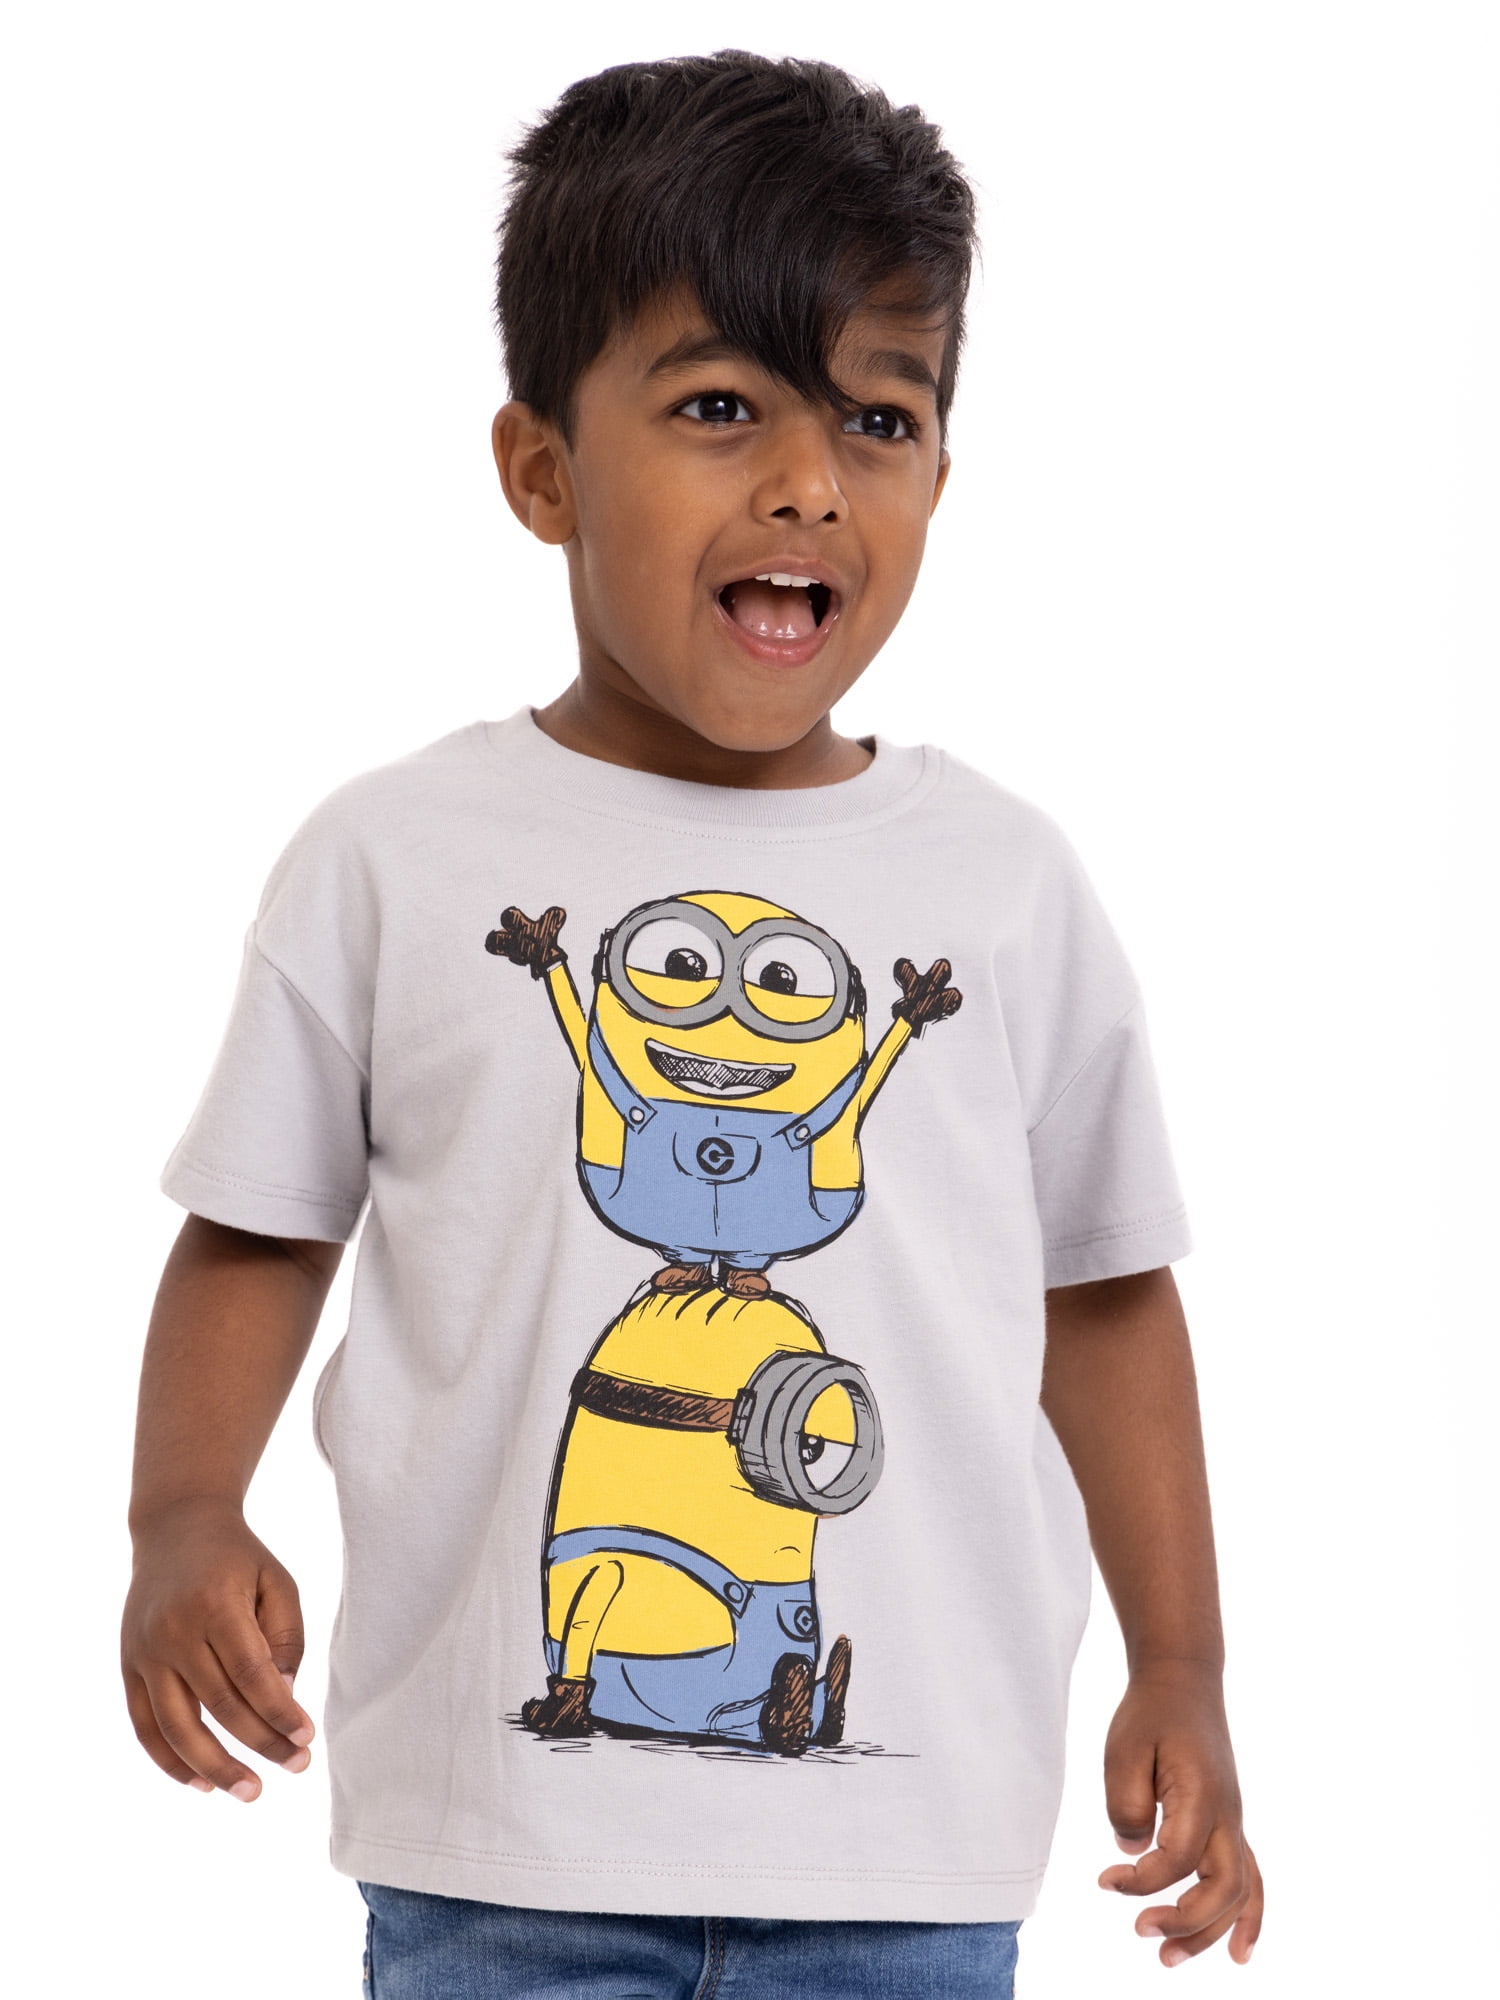 Bluey Toddler Boys or Girls Short Sleeve Crewneck T-Shirt, Sizes